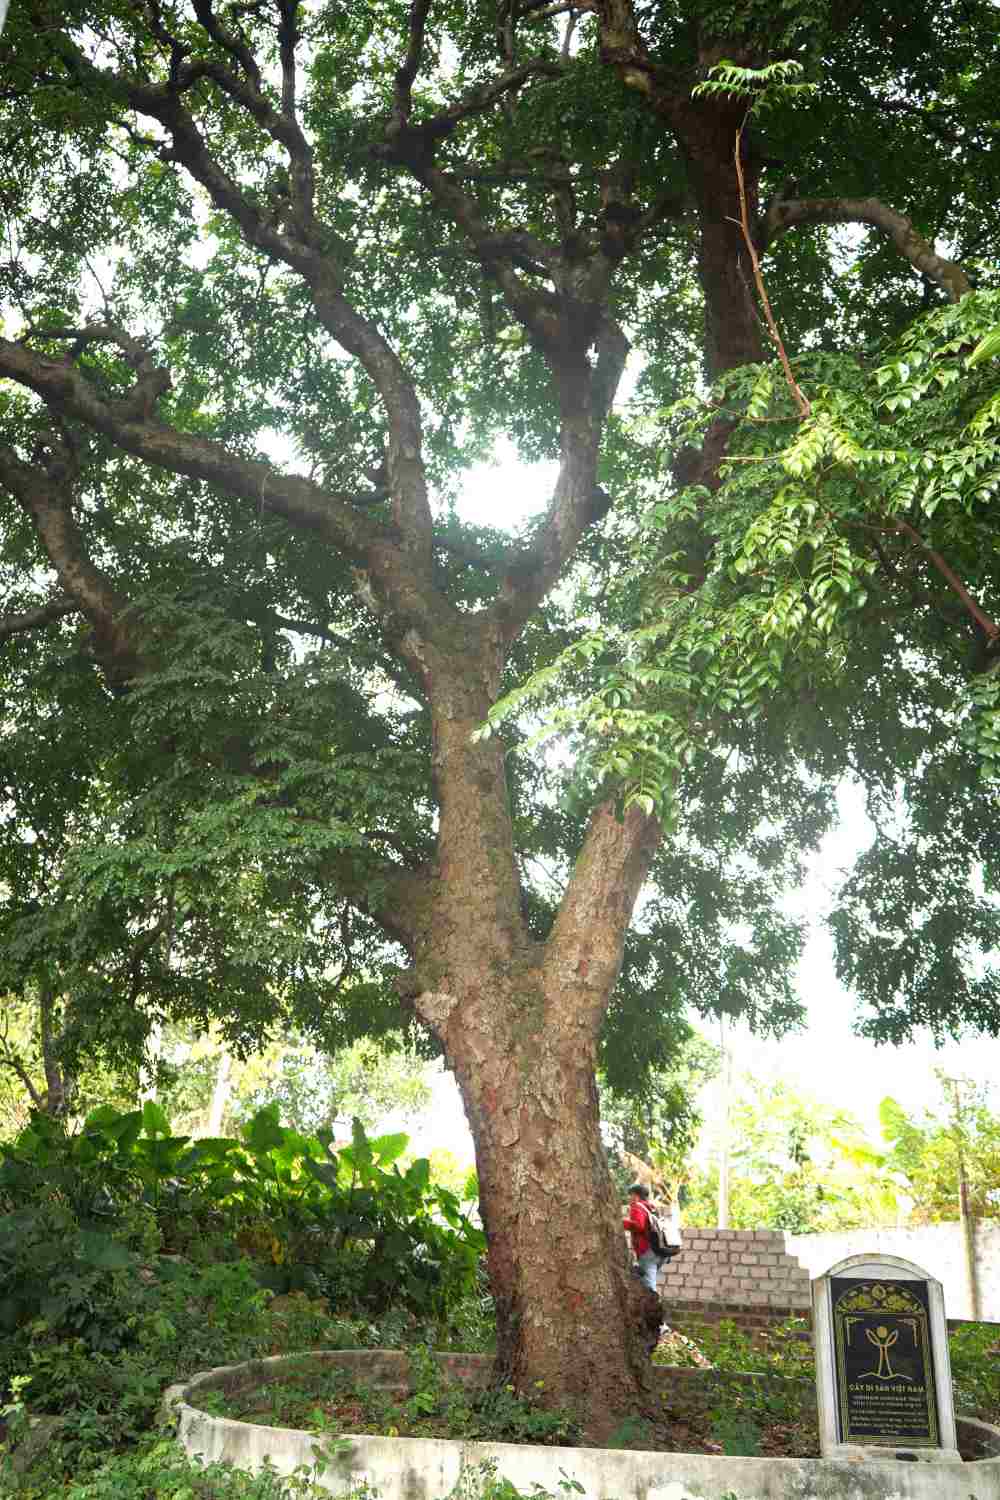 Trong 2 cây lim, chỉ có một cây được vinh danh là cây di sản, có tuổi đời khoảng 1000 năm. Đoàn khảo sát lập hồ sơ vinh danh cây di sản cho biết, cây lim này là cây cổ thụ nhất vùng và là cây lim xanh đầu tiên được phát hiện tại xã Hoà Bình.  